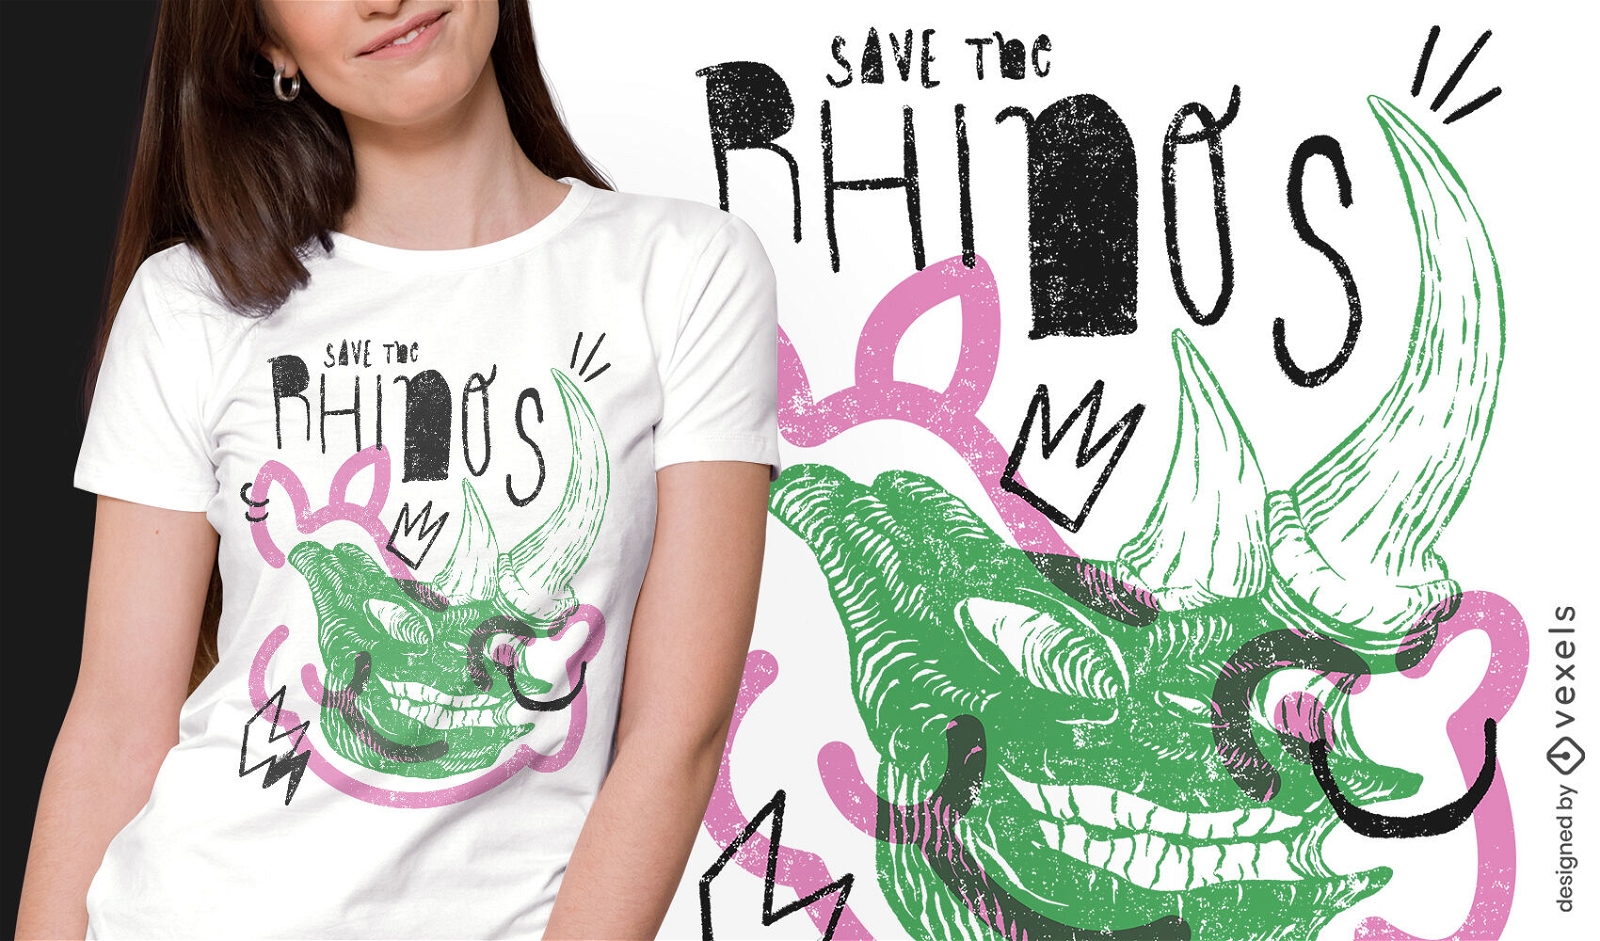 Rhino skull quote t-shirt design